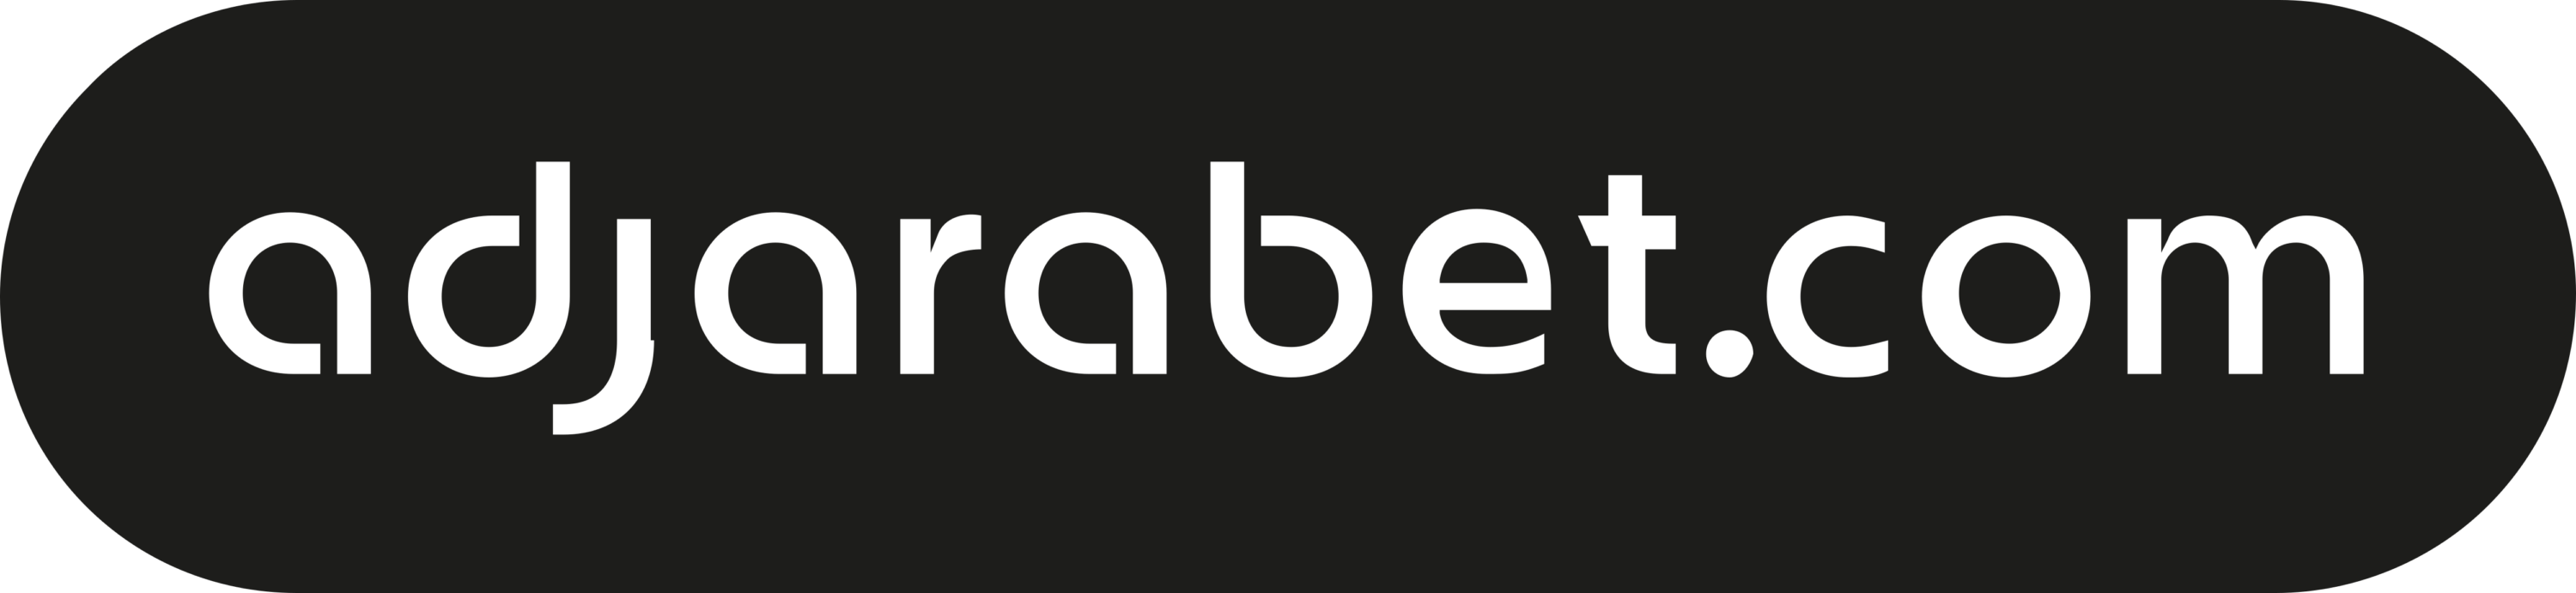 Adjarabet.com Logo